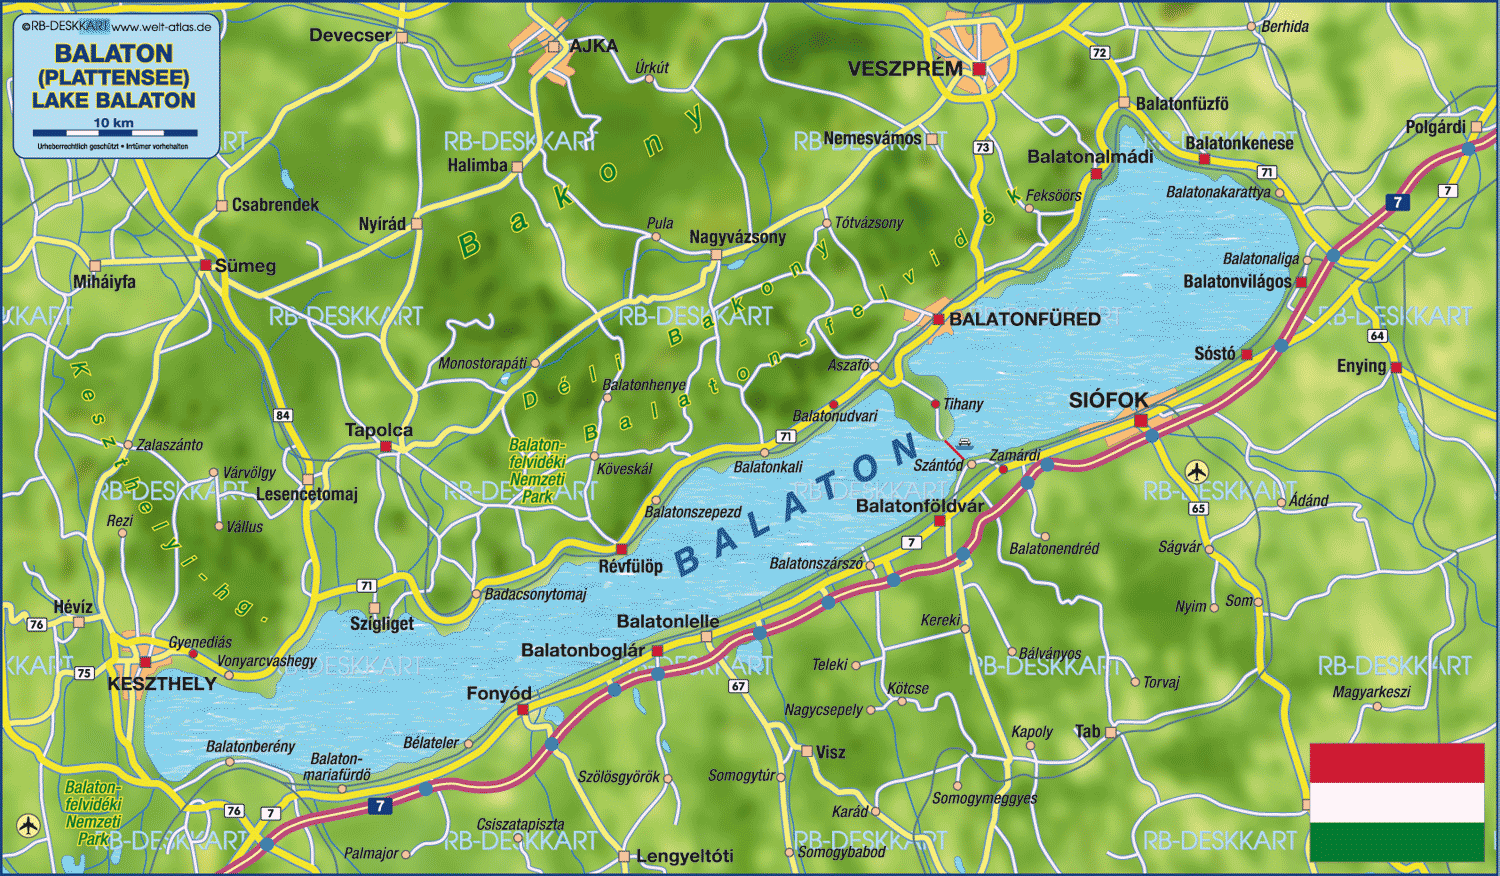 Map of Lake Balakon (Region in Hungary)